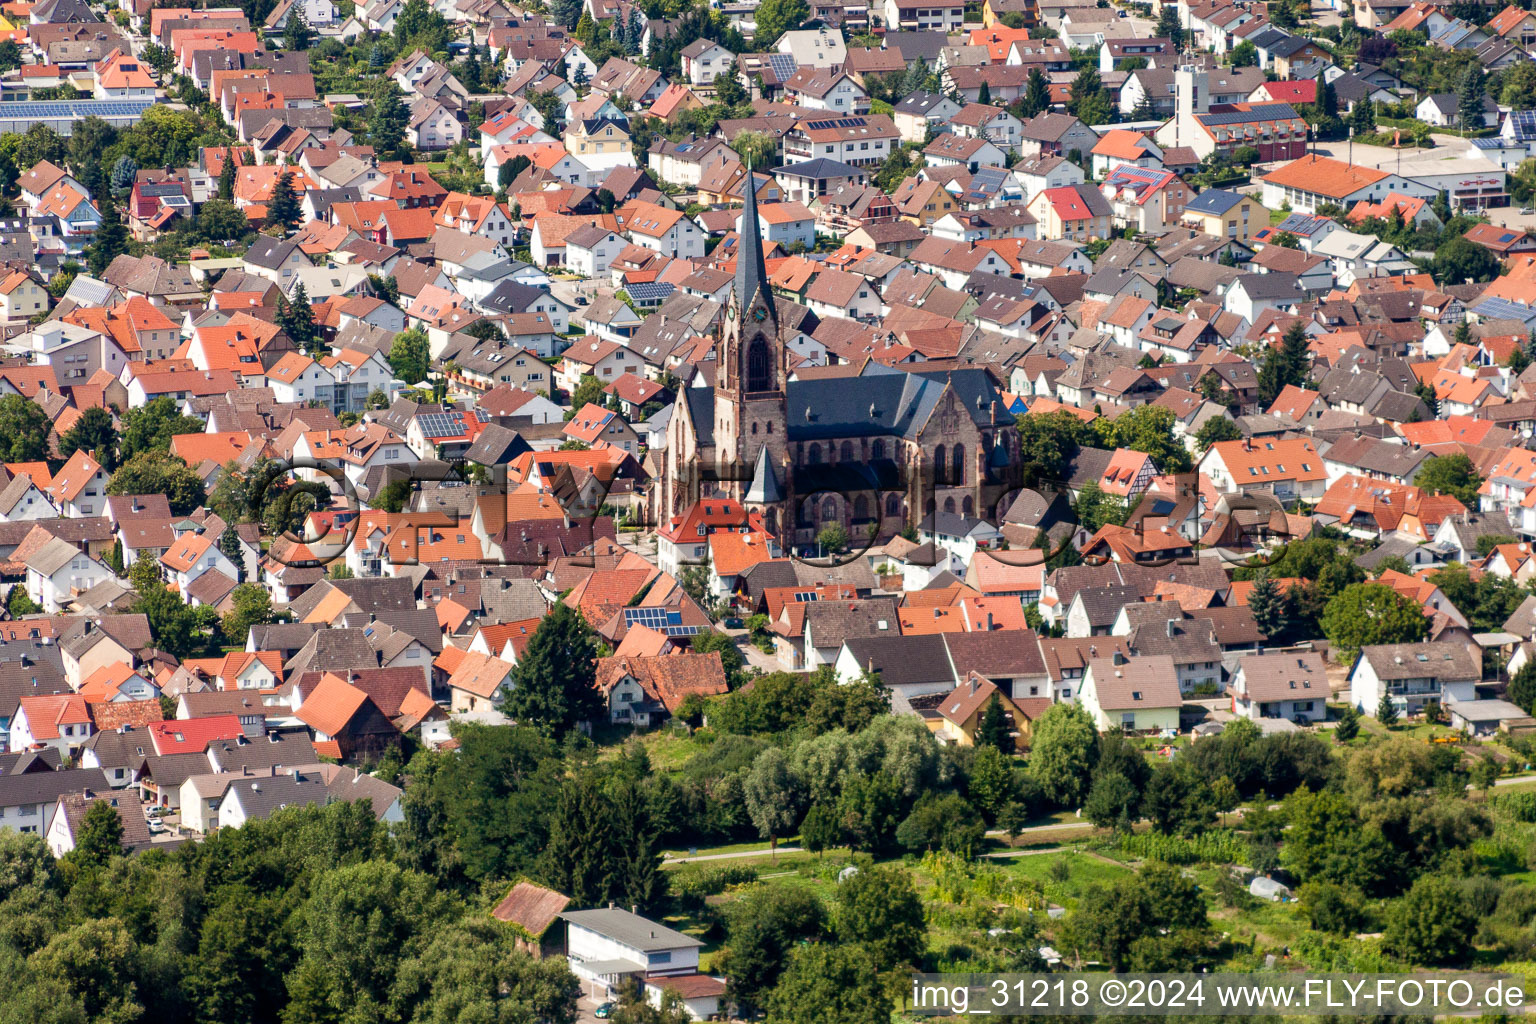 Vue aérienne de Marie Reine des Anges dans le centre historique du centre-ville à Muggensturm dans le département Bade-Wurtemberg, Allemagne